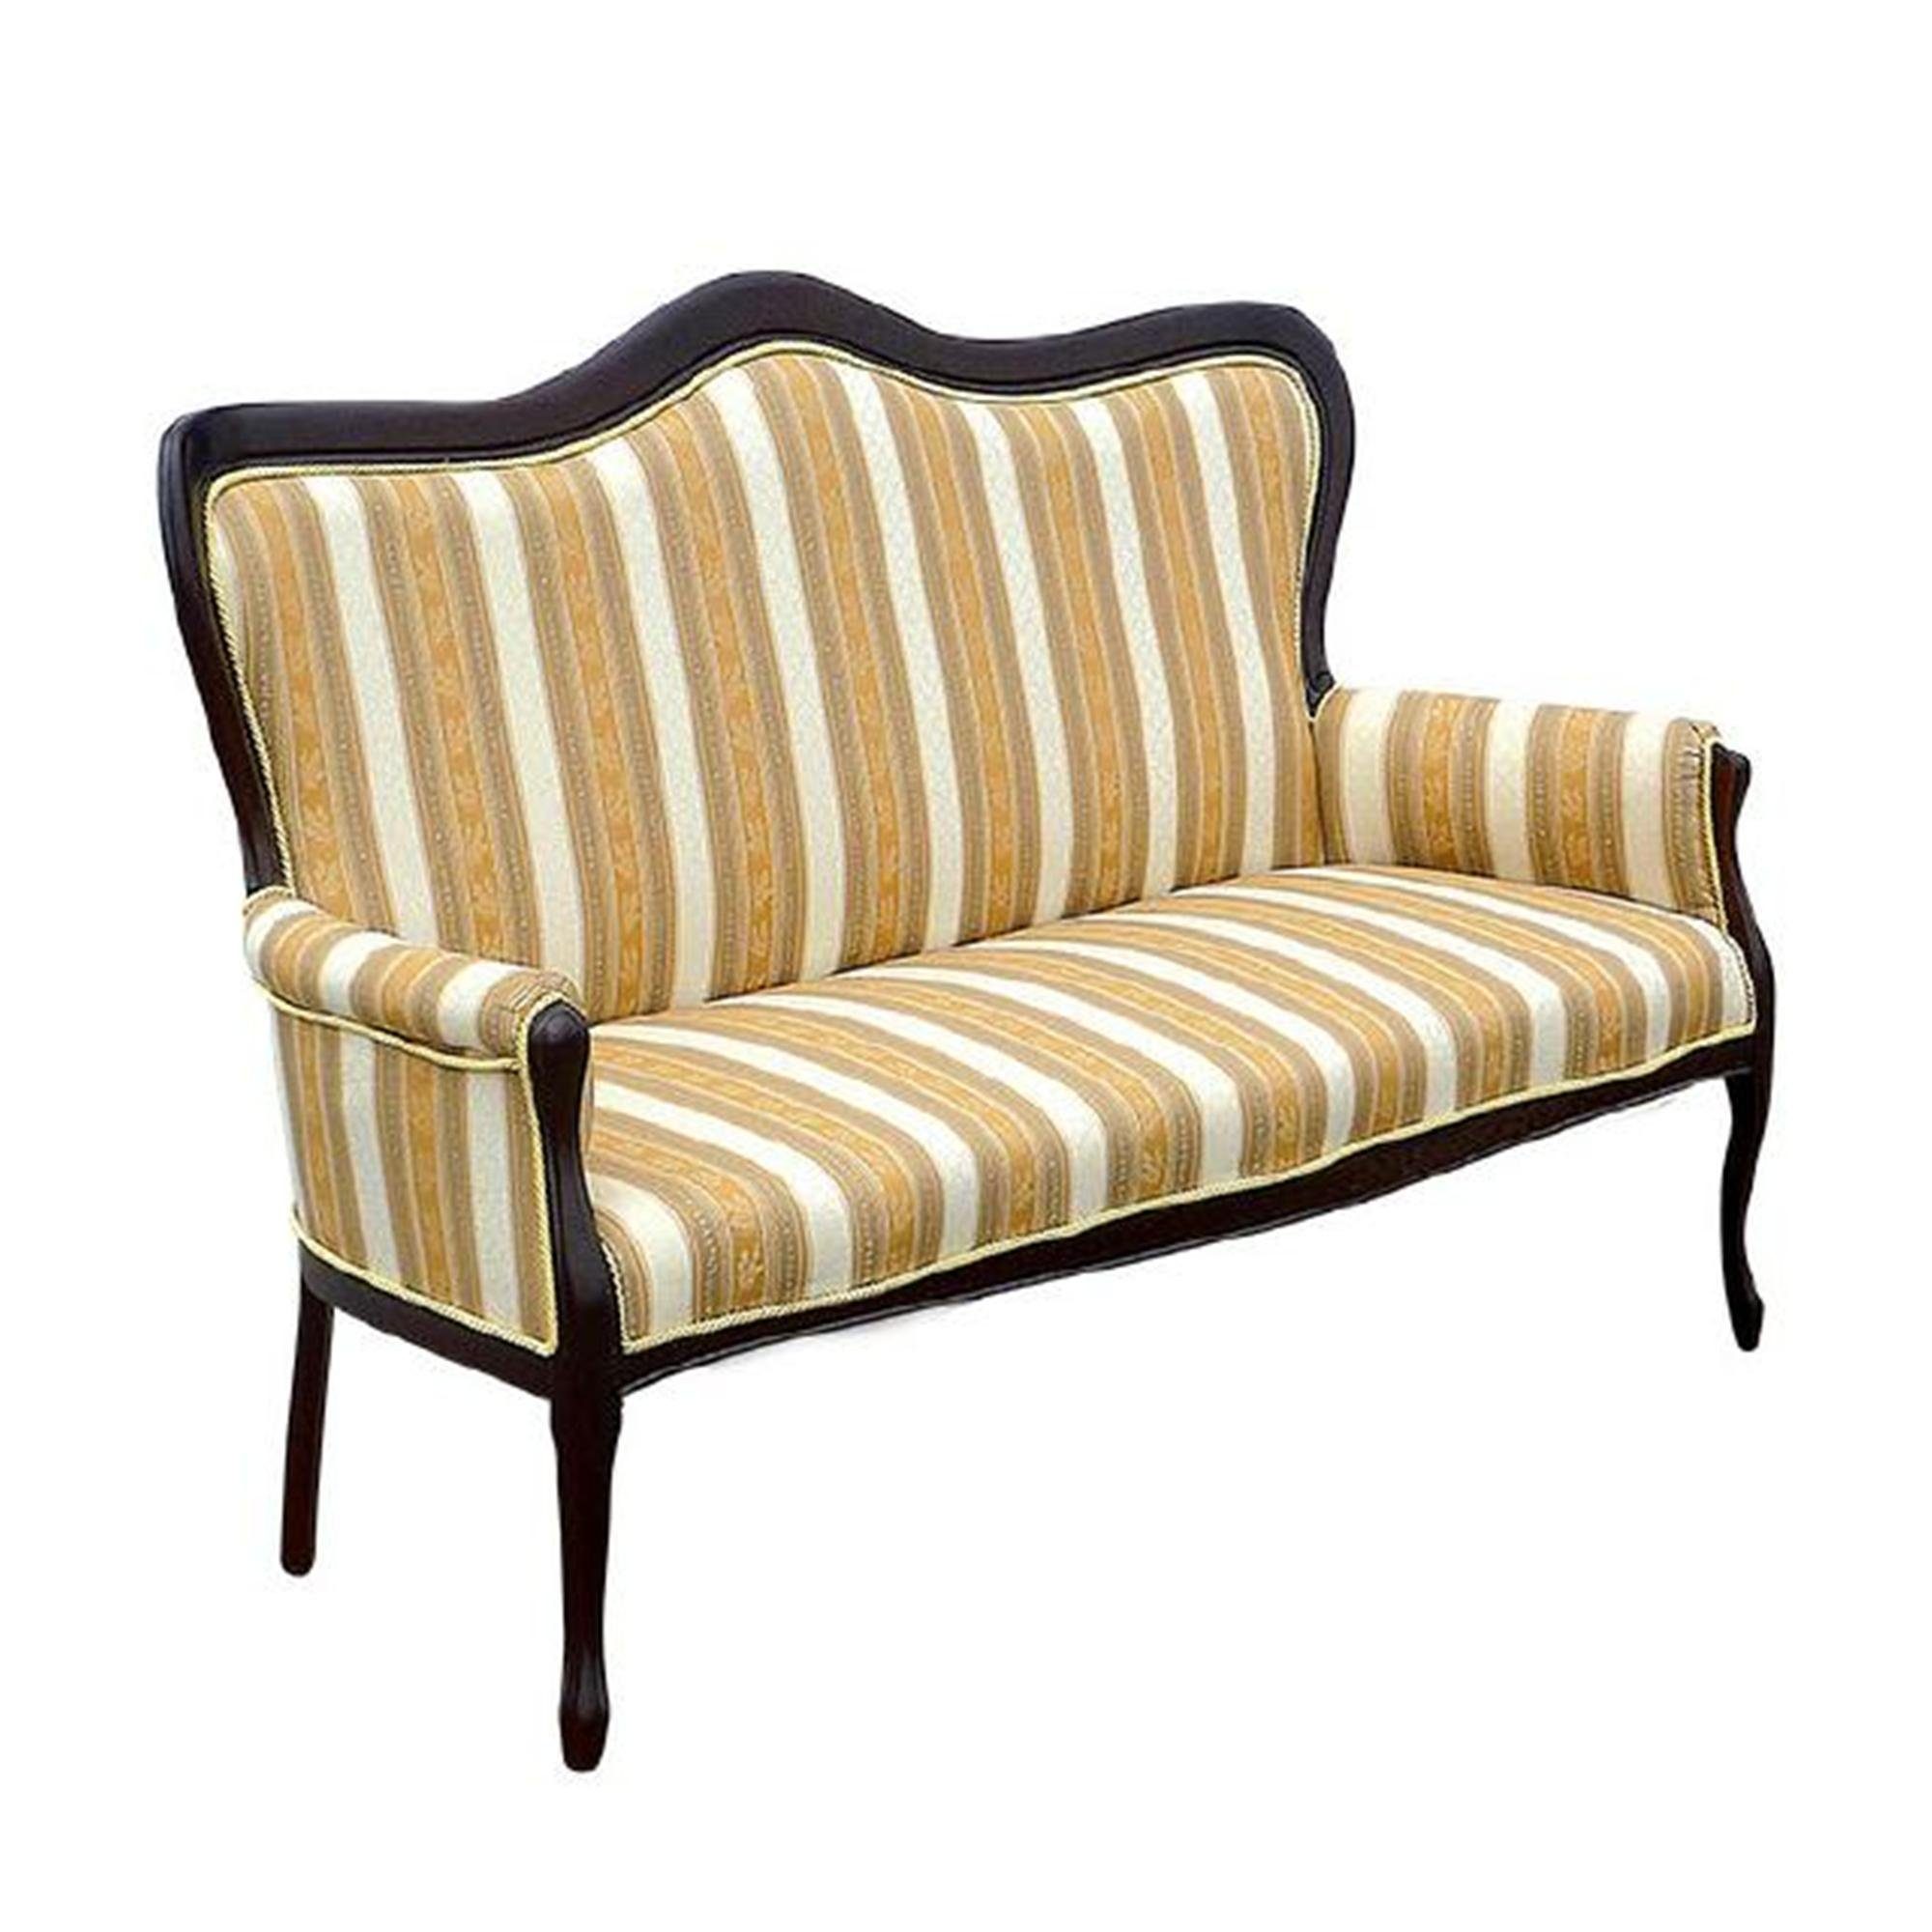 JVmoebel Chesterfield-Sofa Klassische Luxus Stoffbank Sitzbank Stilvolle Möbel Neu, Made in Europe